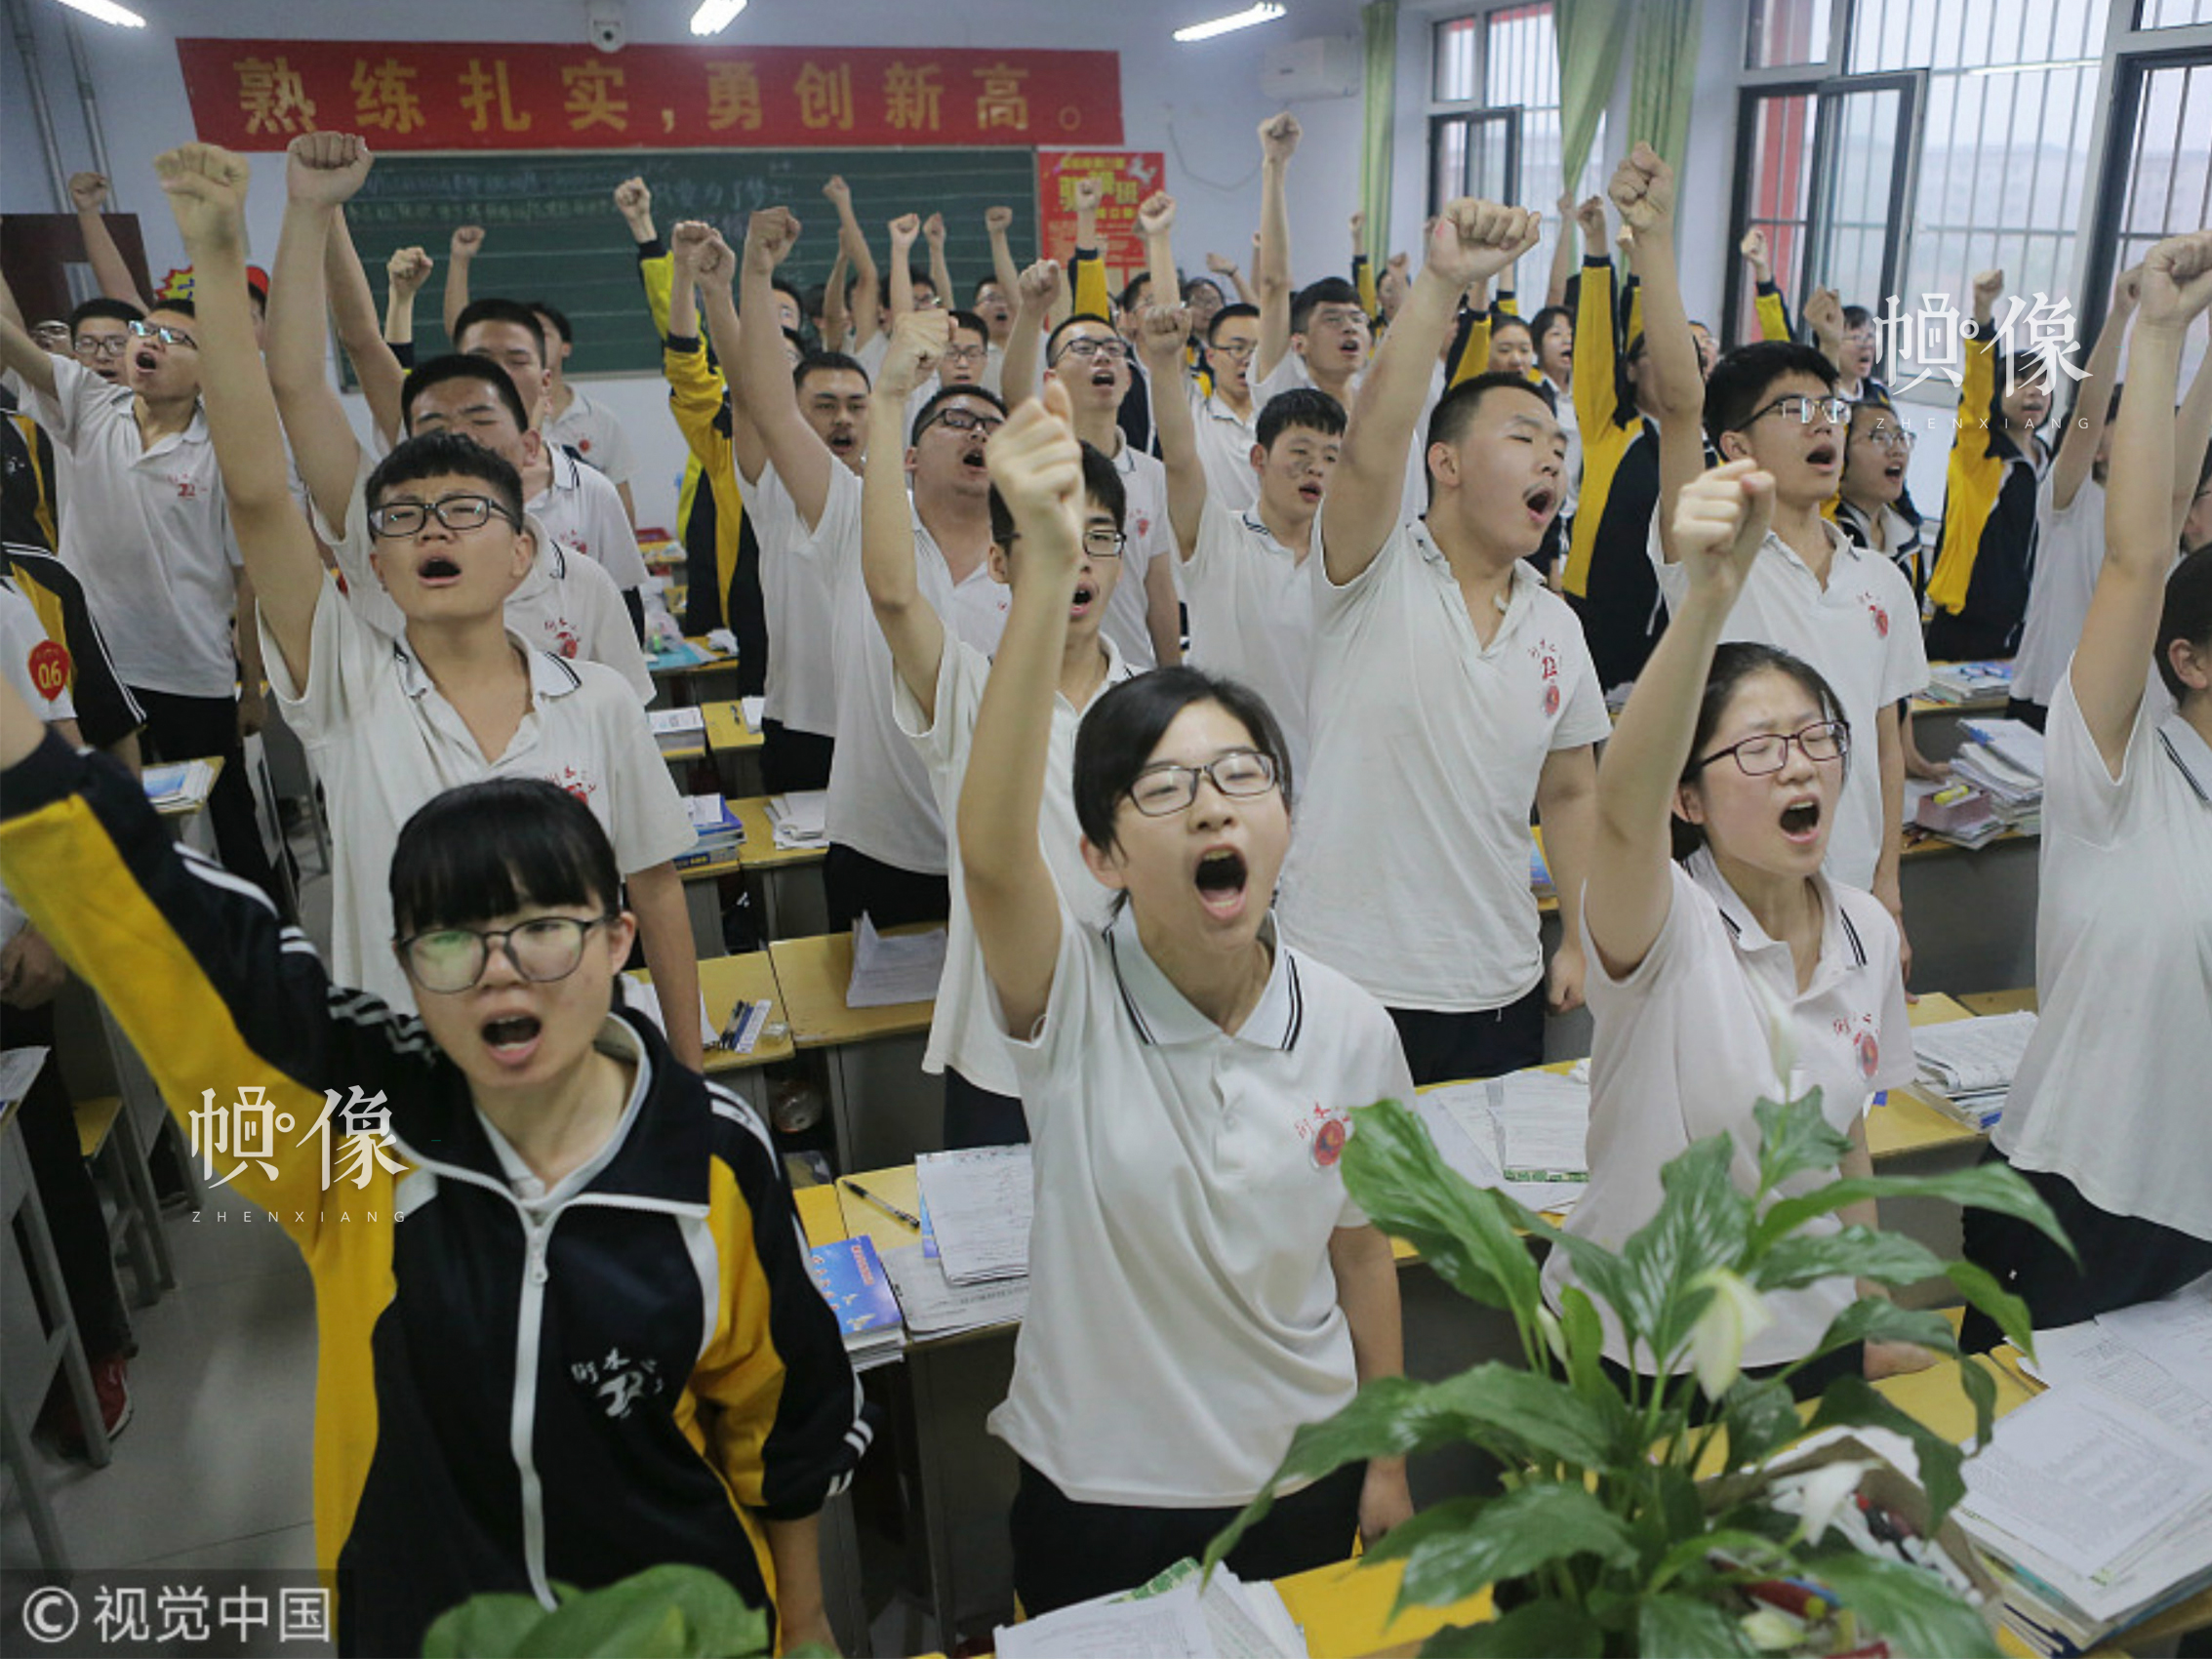 2018年05月06日，河北衡水二中的高三學生在進行課前宣誓，這是這所學校所有年級每個班每天都會進行的功課，這種方式既可以宣泄壓力，又可以振奮精神。圖片來源：視覺中國